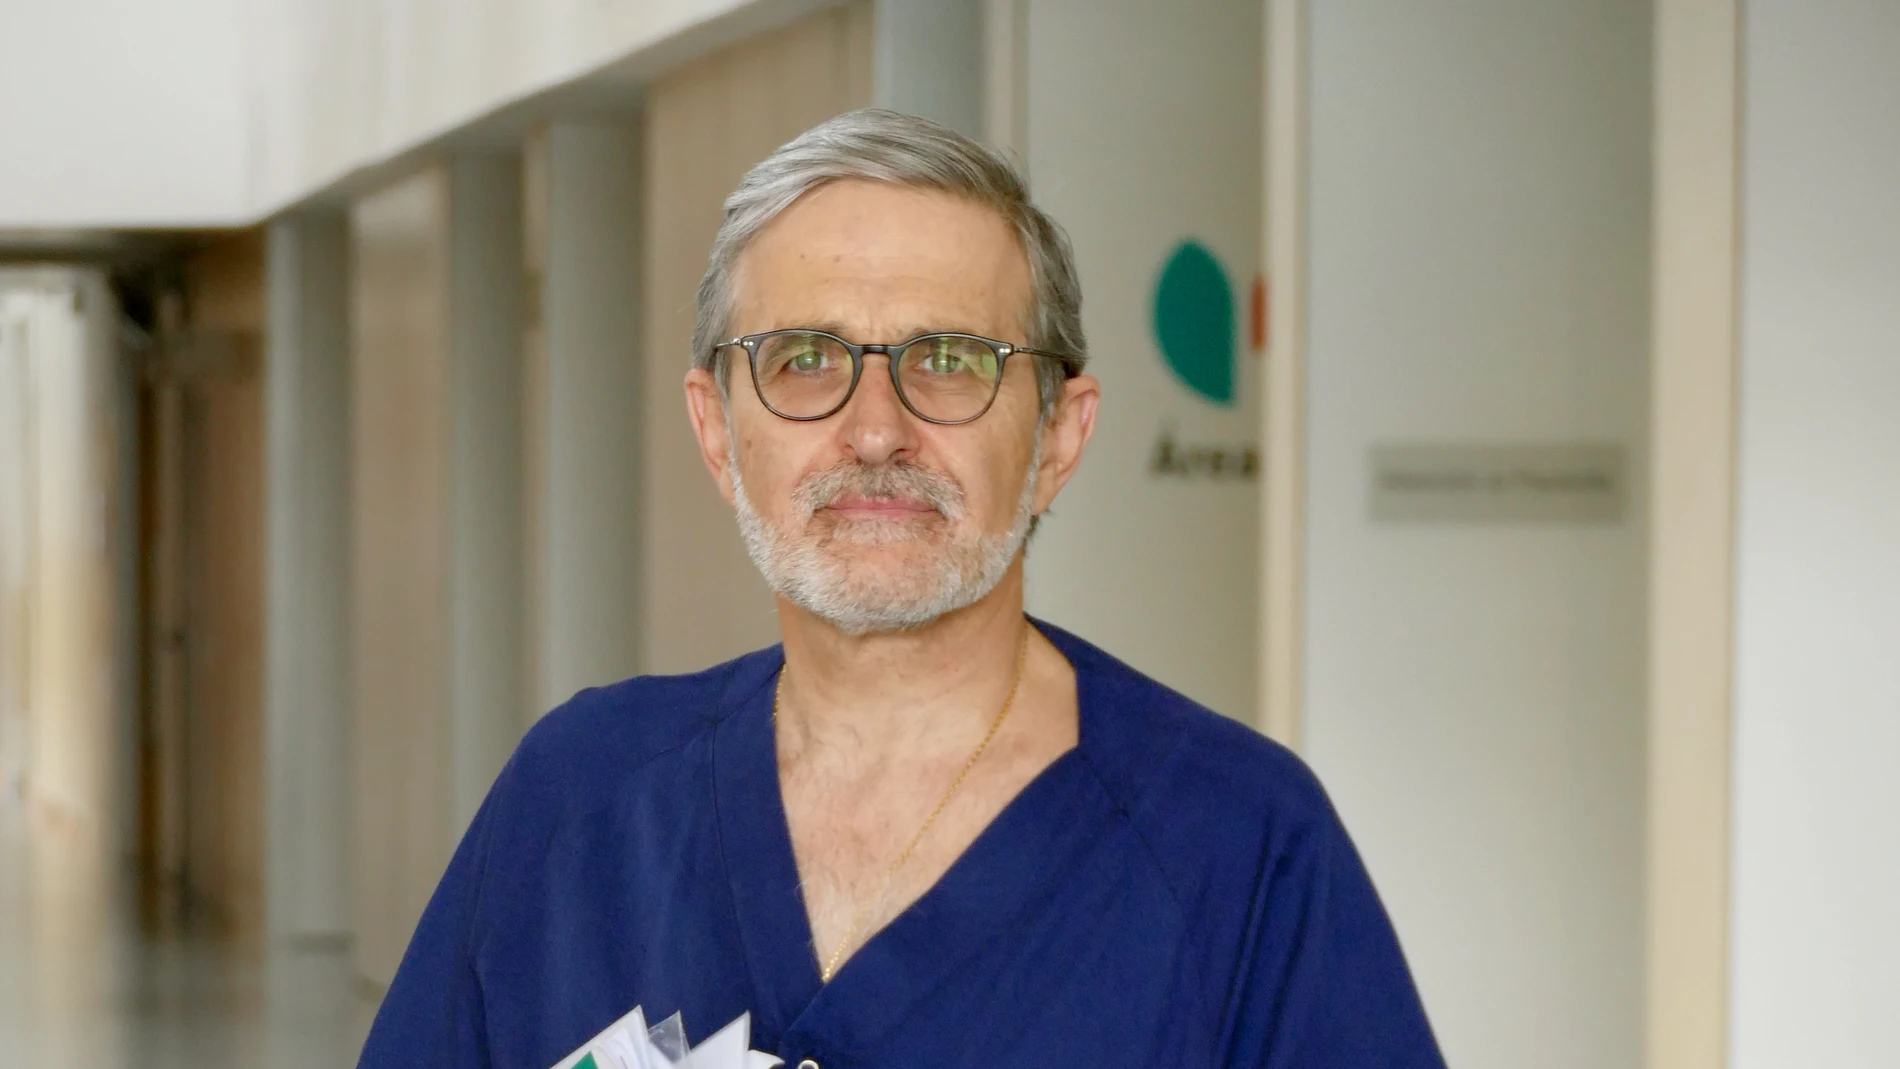 Dr. Daniel Carnevali. Jefe de medicina interna del hospital universitario Quirónsalud Madrid